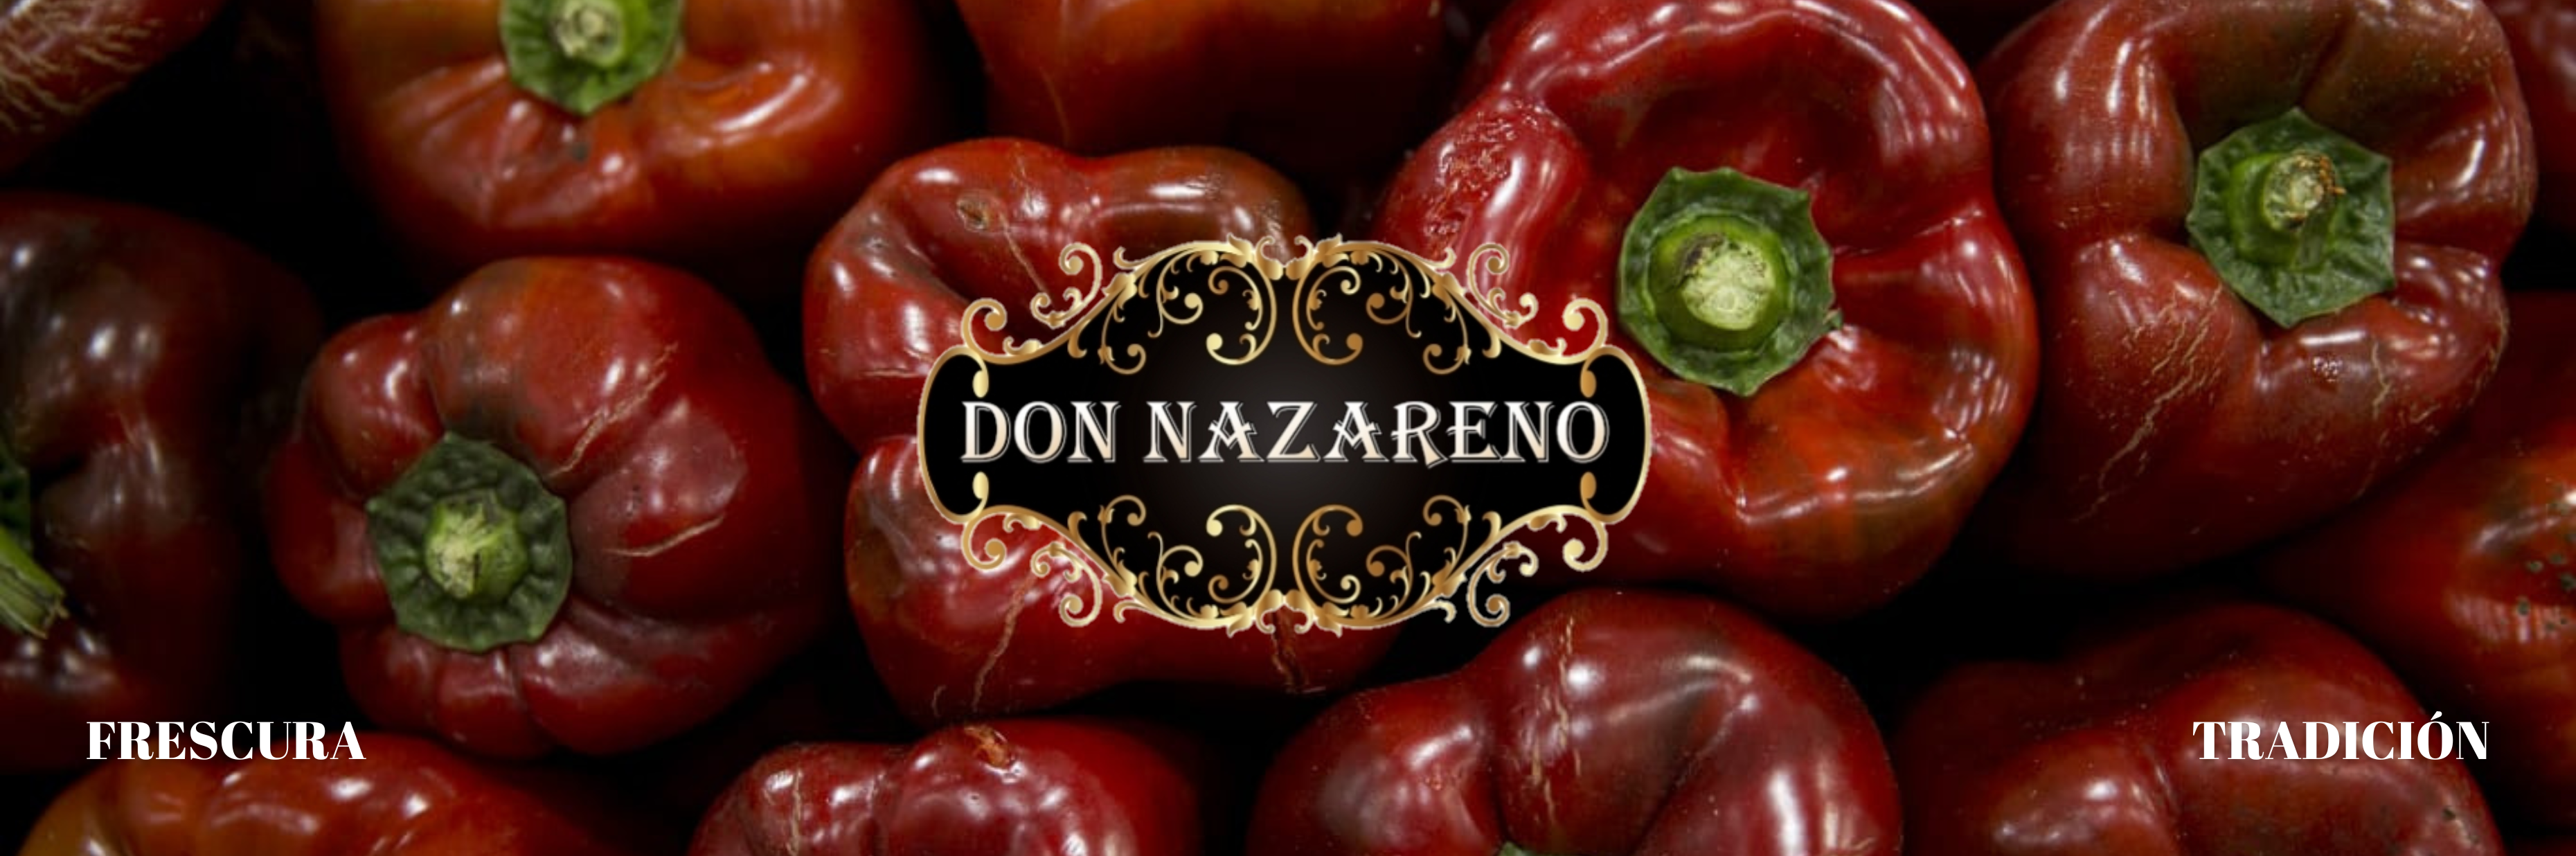 Slider – Don Nazareno